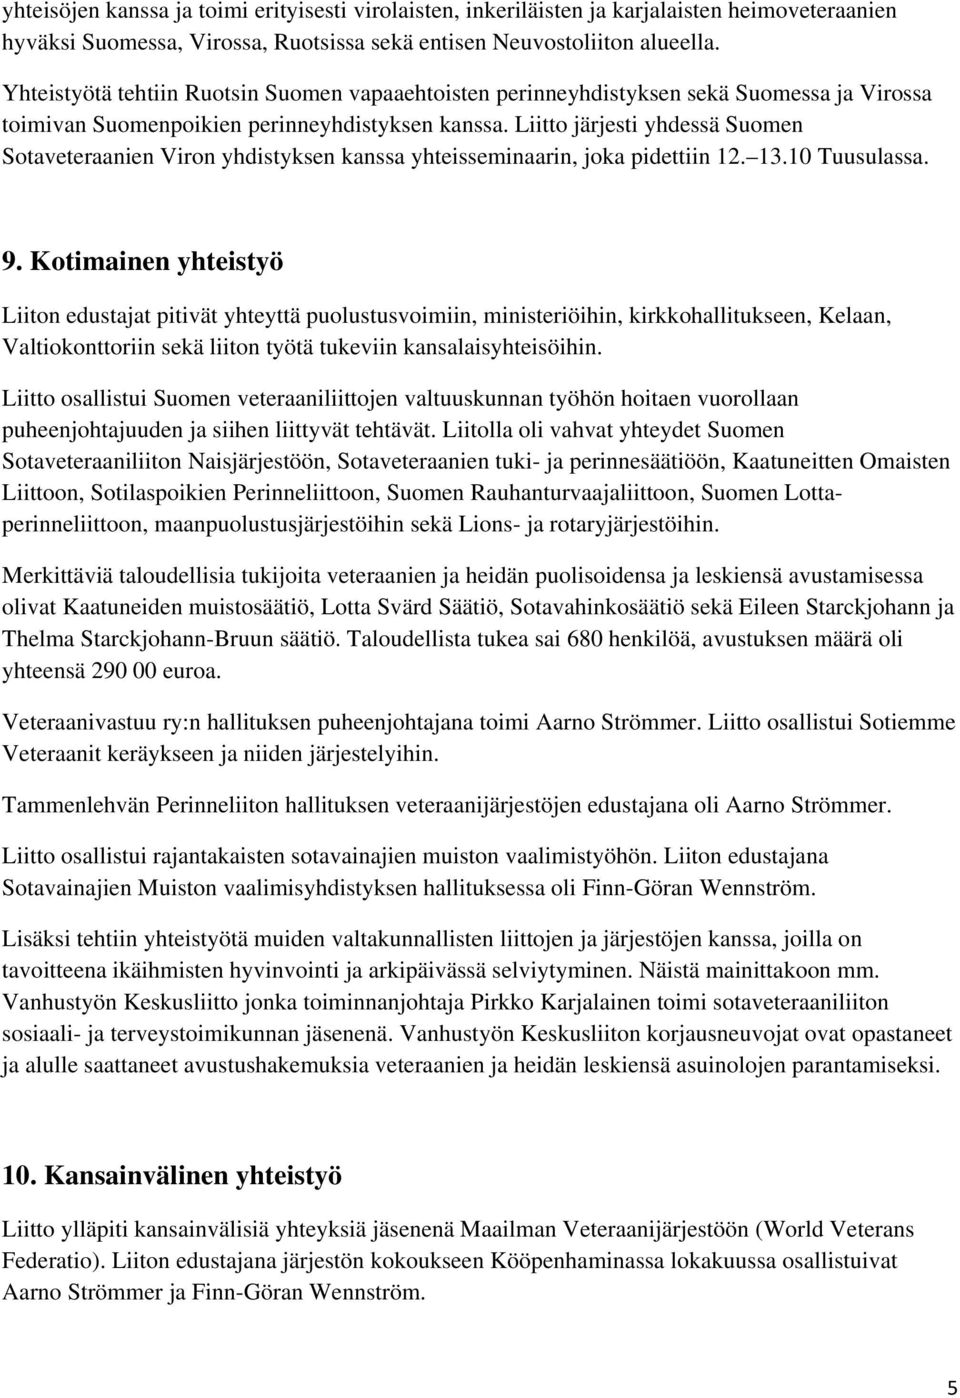 Liitto järjesti yhdessä Suomen Sotaveteraanien Viron yhdistyksen kanssa yhteisseminaarin, joka pidettiin 12. 13.10 Tuusulassa. 9.